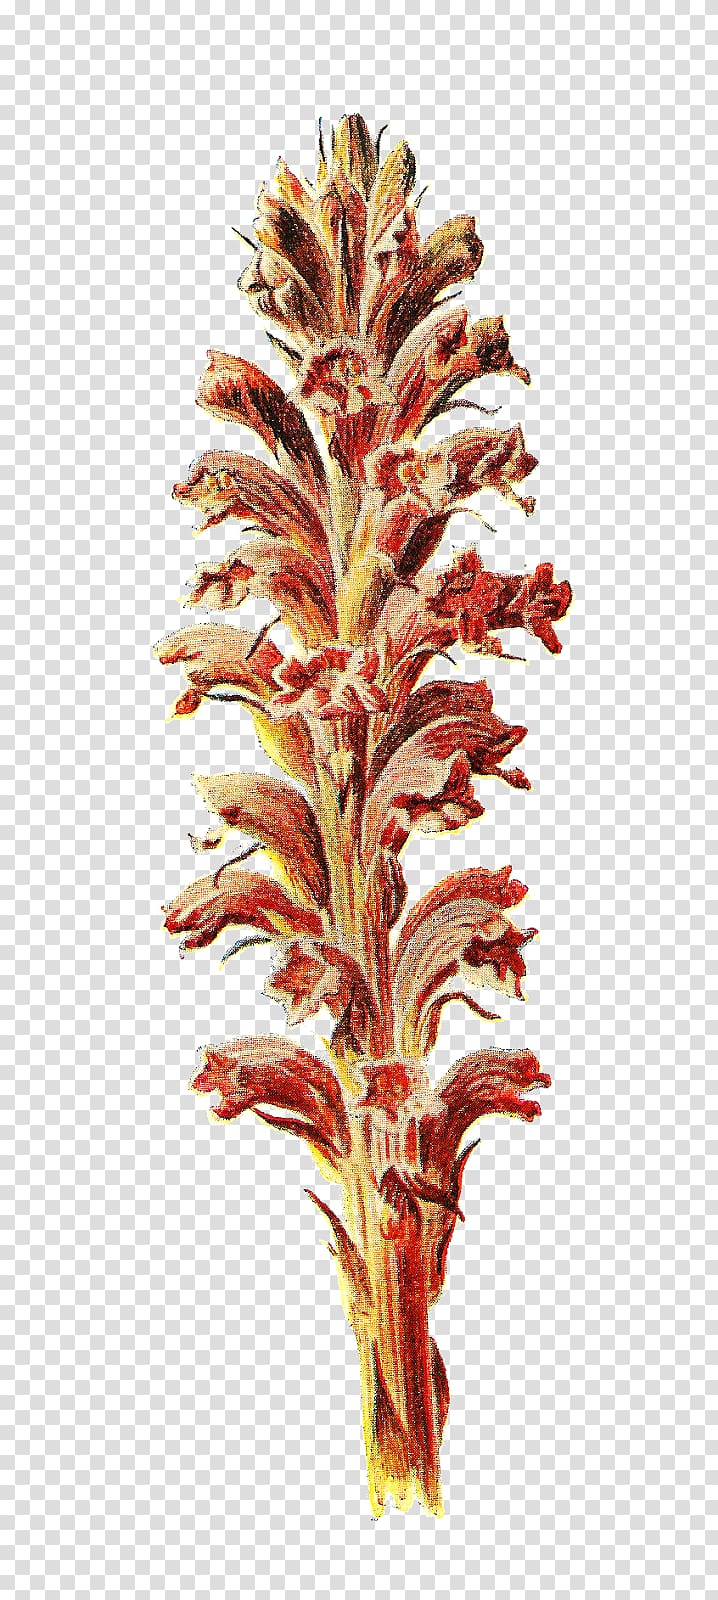 Familiar Wild Flowers Botany Botanical illustration, broom transparent background PNG clipart